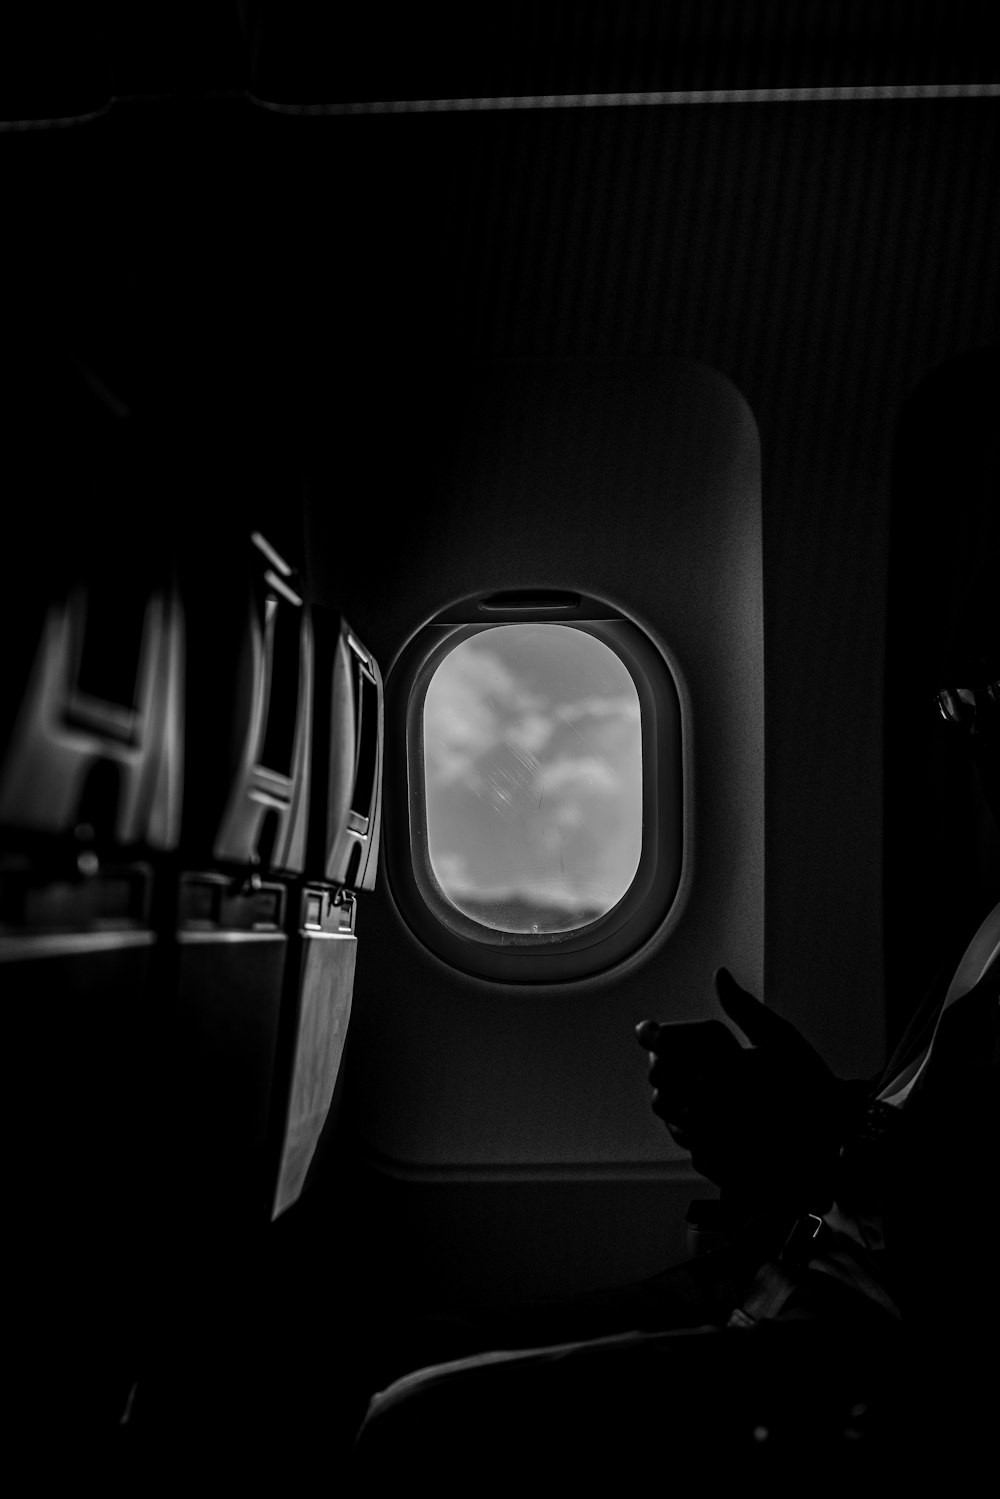 飛行機の窓のグレースケール写真